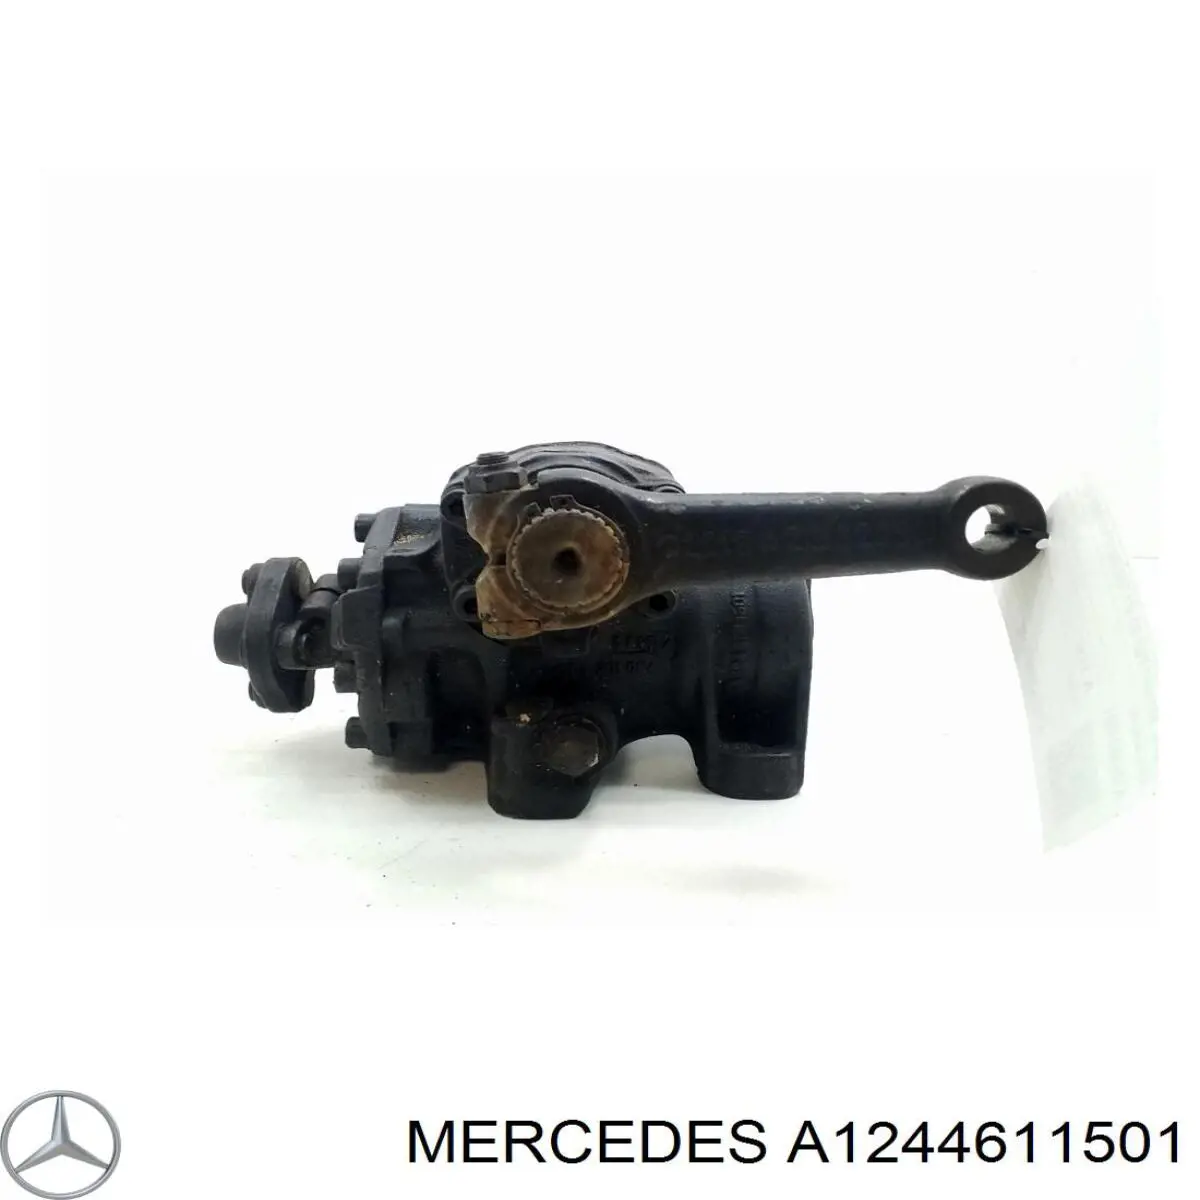 A1244611501 Mercedes механизм рулевой (редуктор)